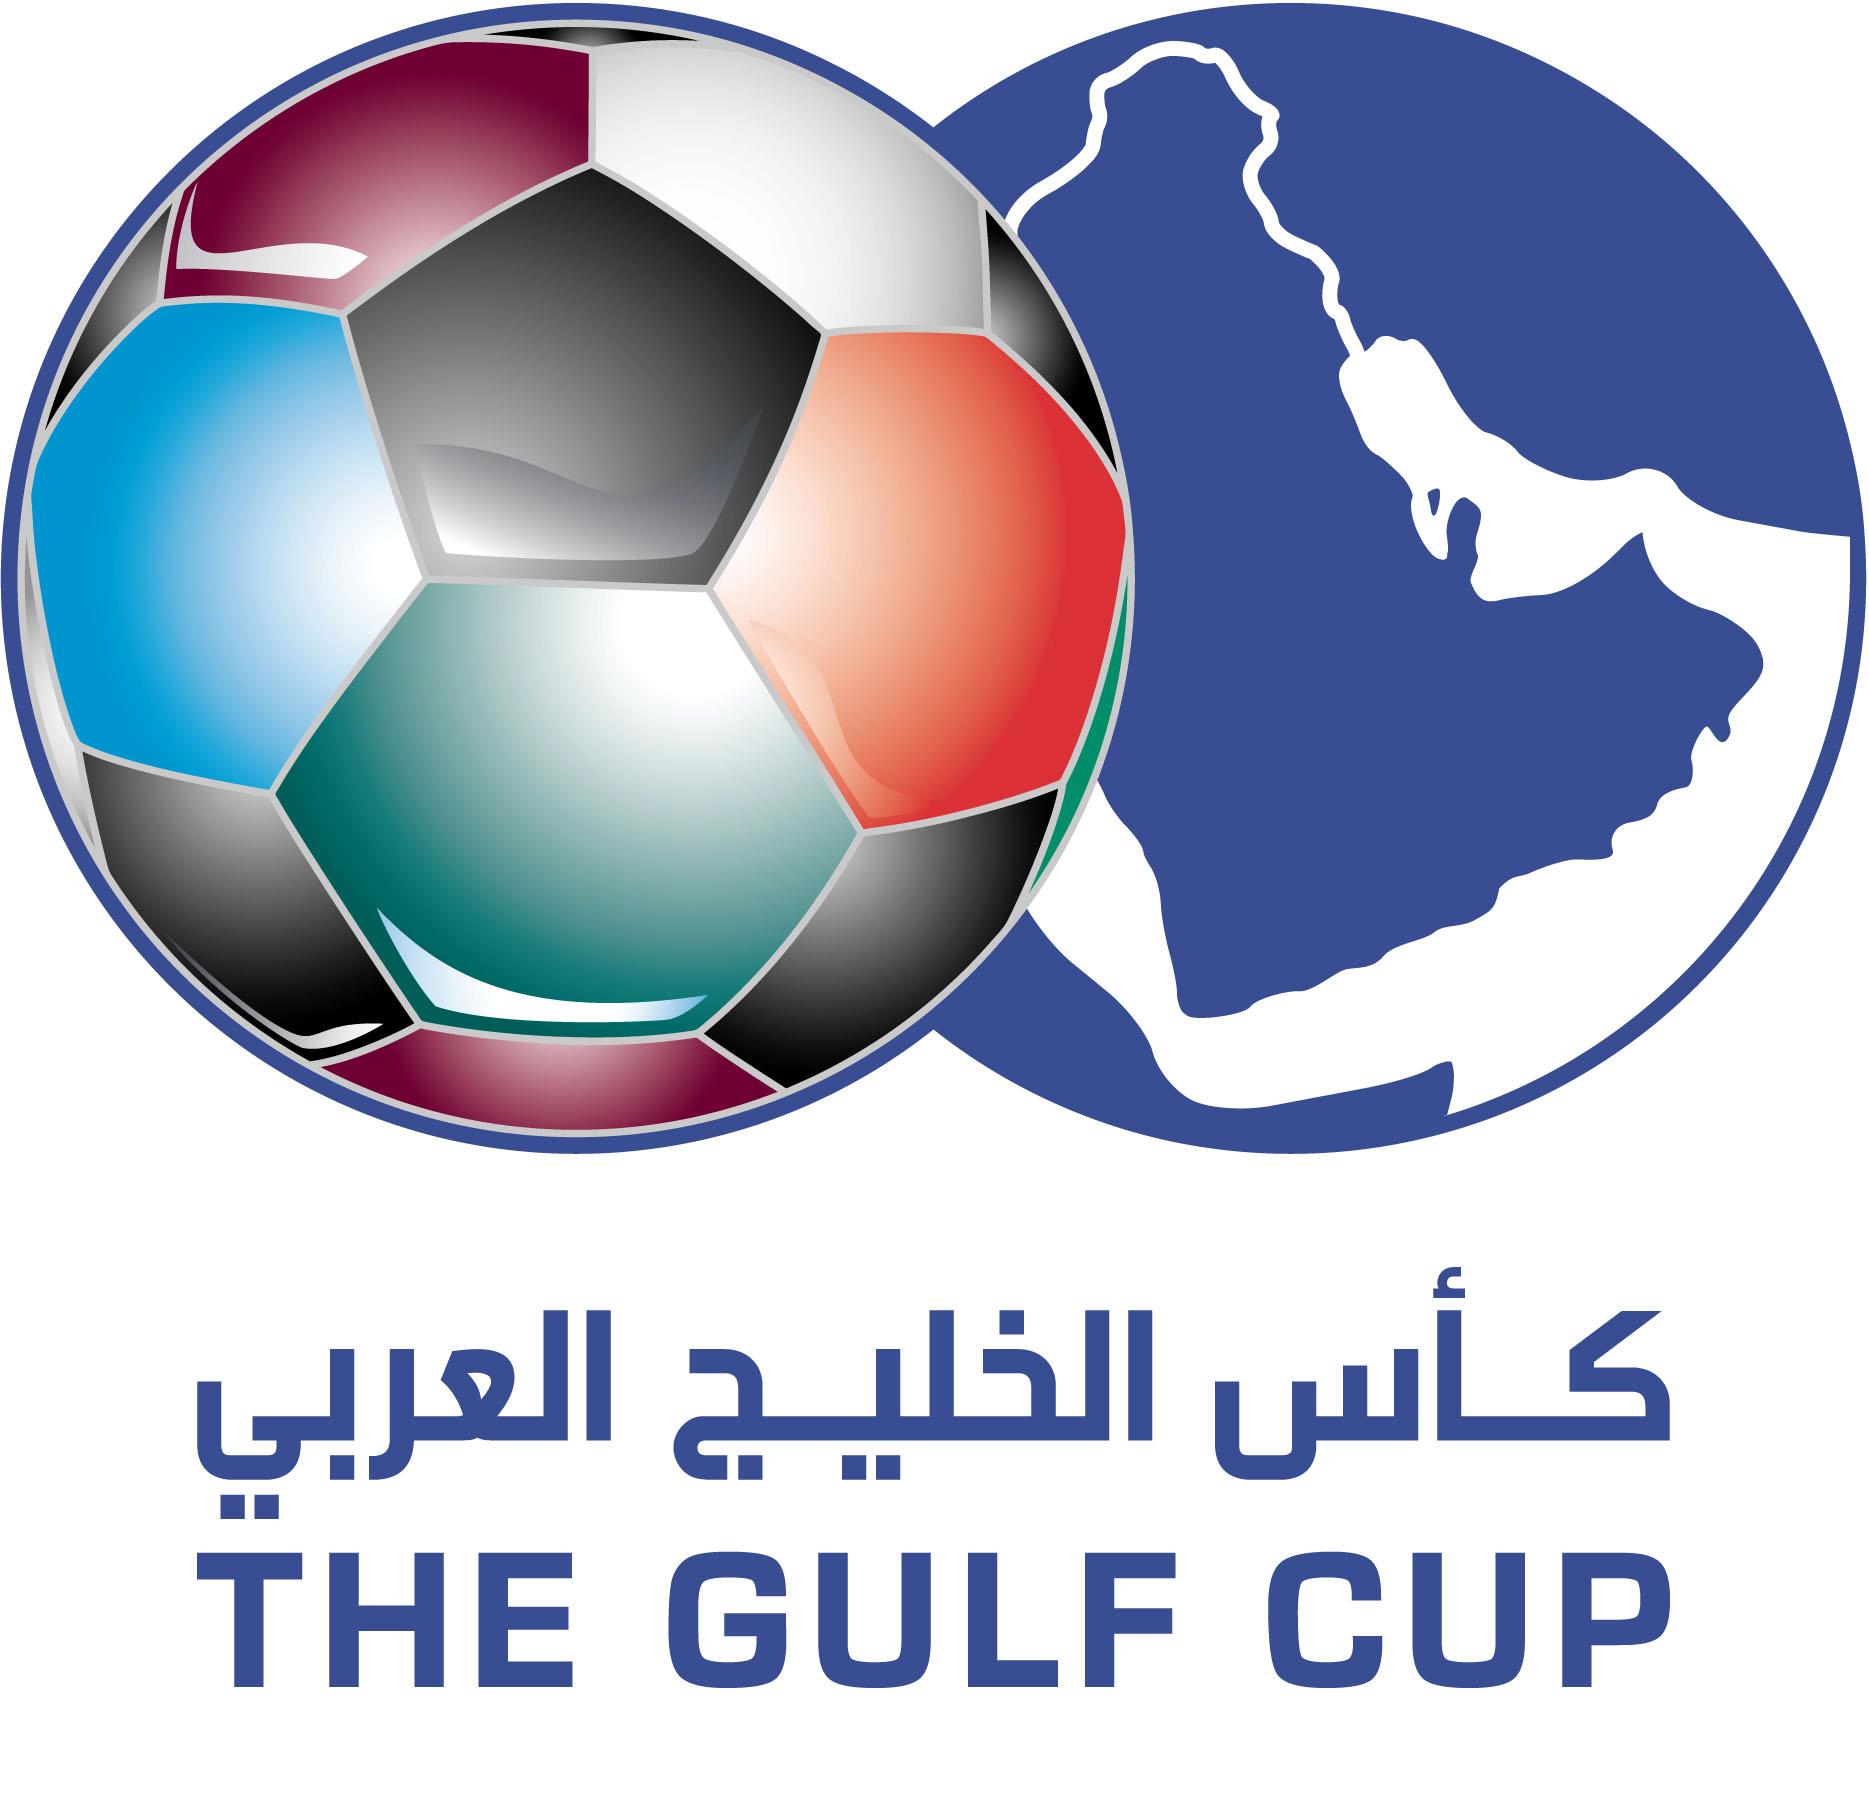 ماذا قدَّمت منتخبات المجموعة الأولى في كأس الخليج العربي؟